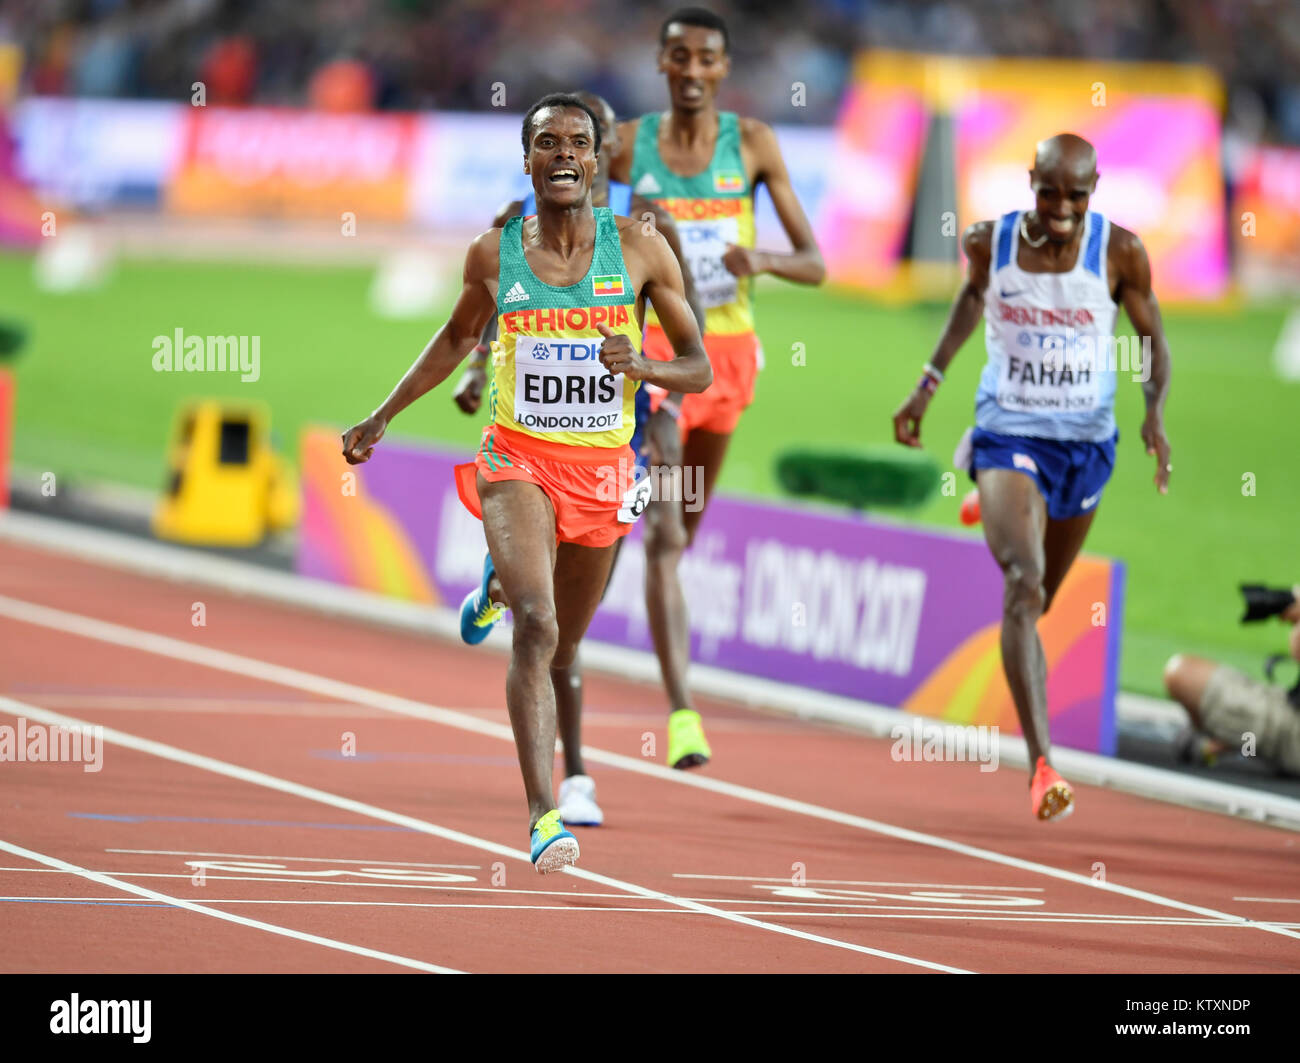 Muktar Edris (Éthiopie) remporte le 5000m hommes Médaille d'or, laissant Mo Farah (Grande-Bretagne) à la deuxième place aux Championnats du monde IAAF - London 2017 Banque D'Images